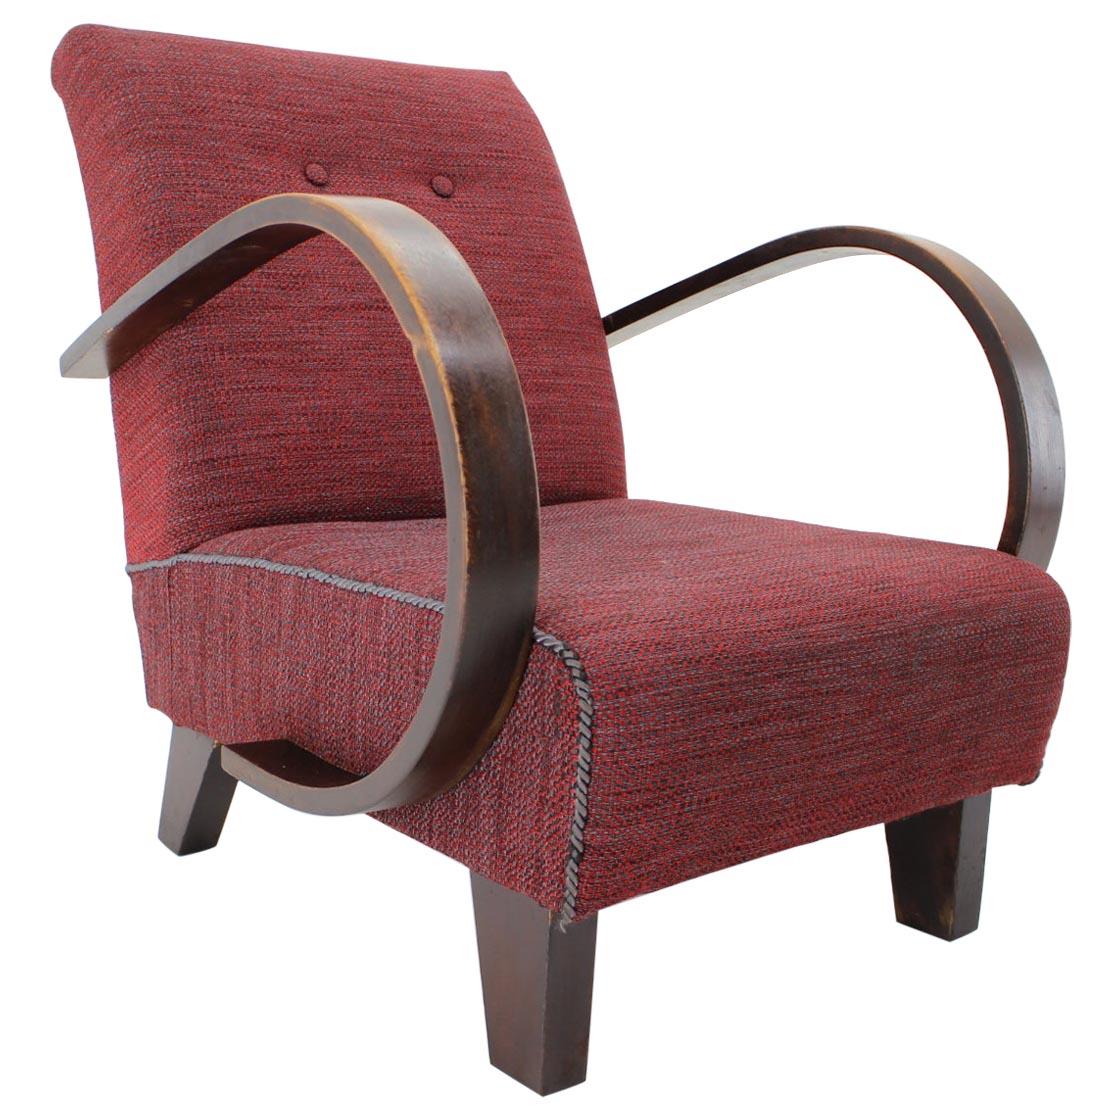 Sessel entworfen von Jindrich Halabala, 1950er Jahre